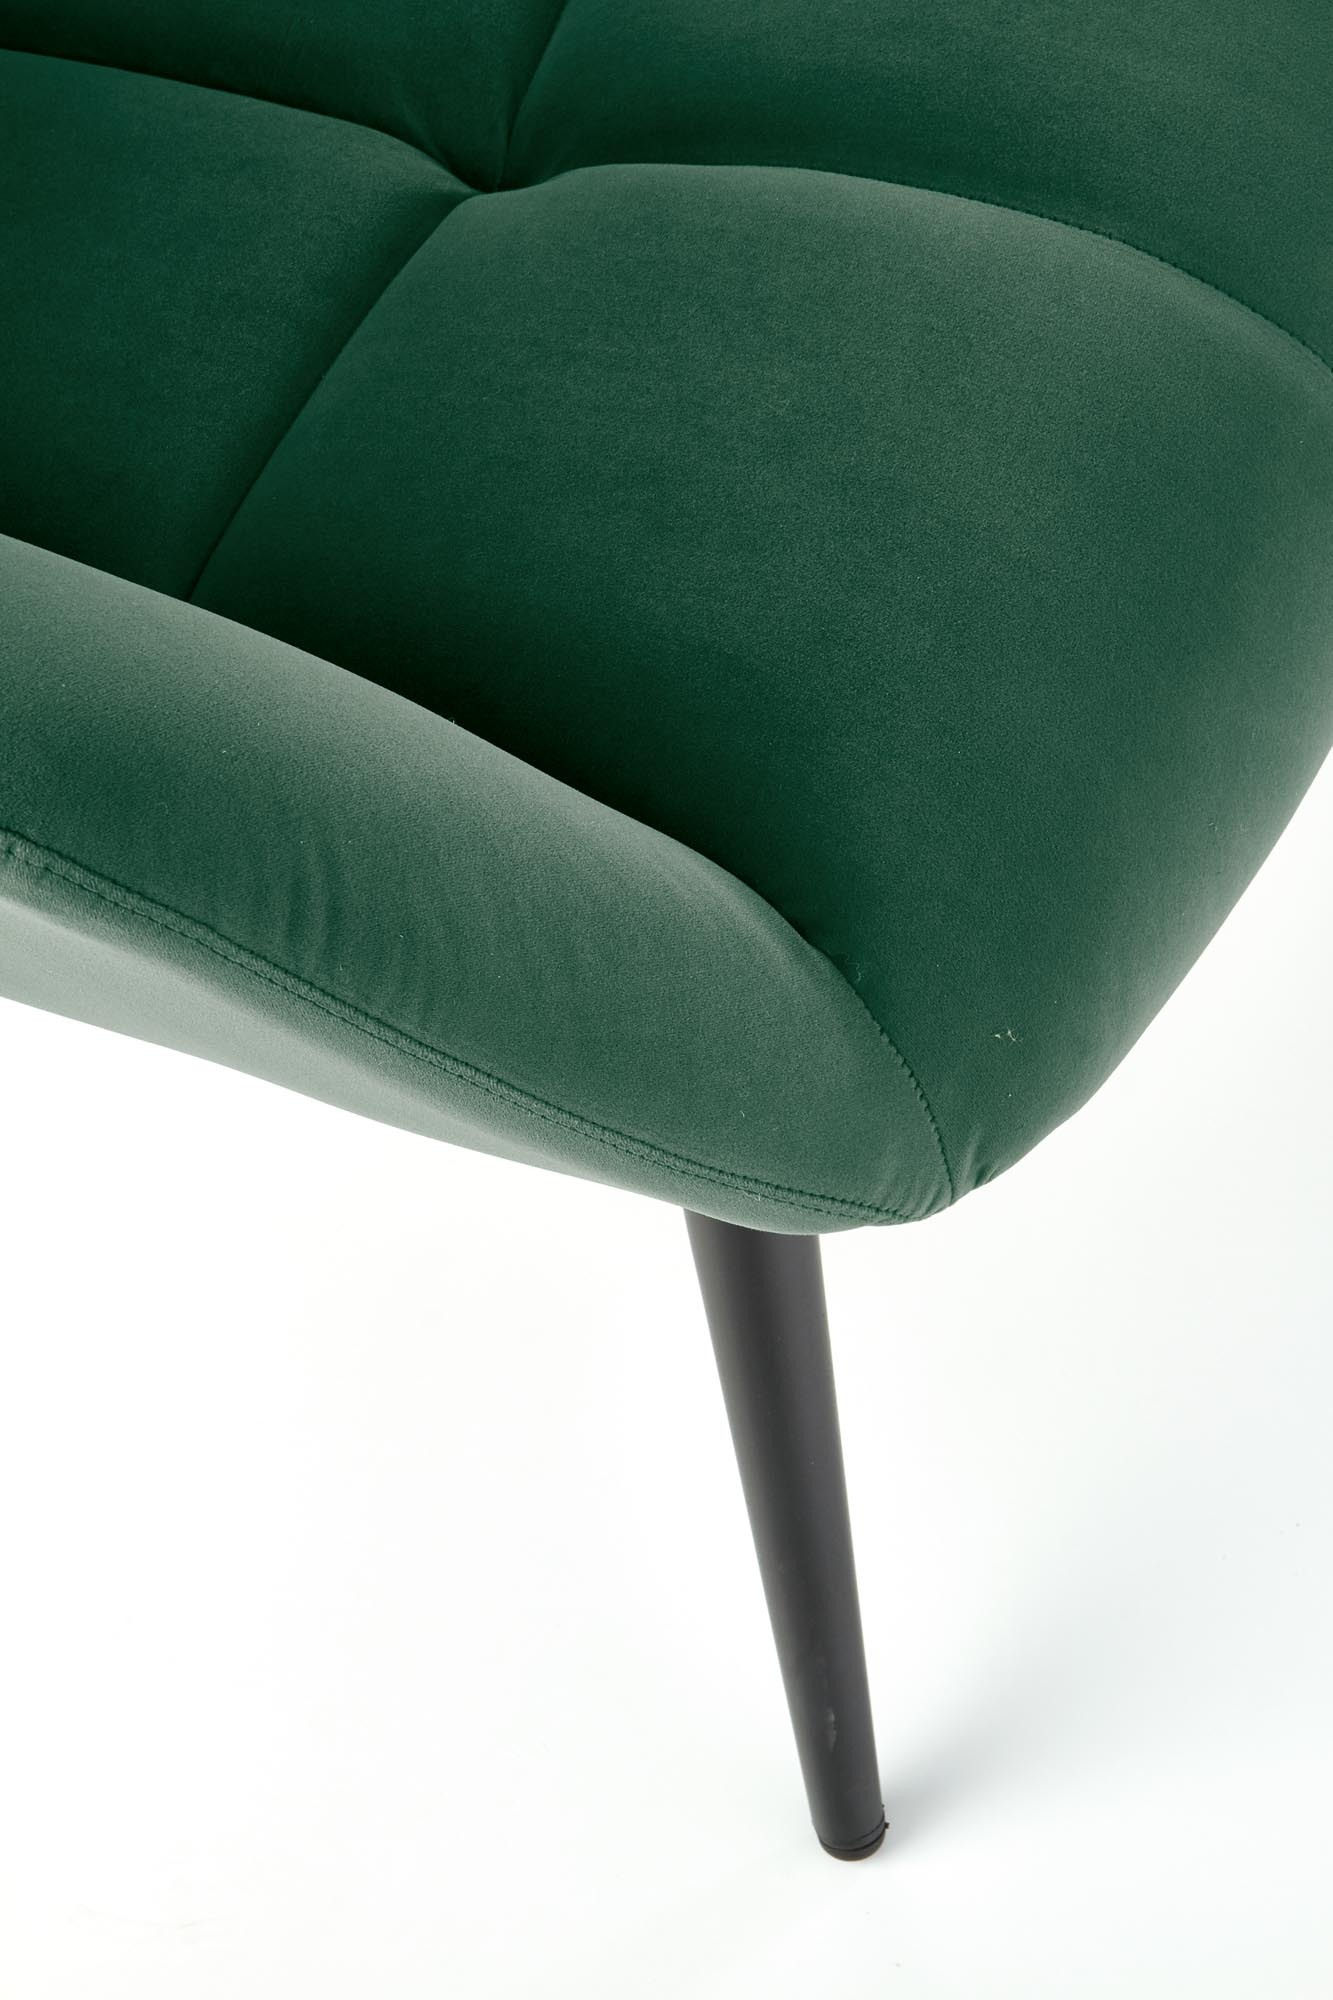 TYRION fotel wypoczynkowy c.zielony